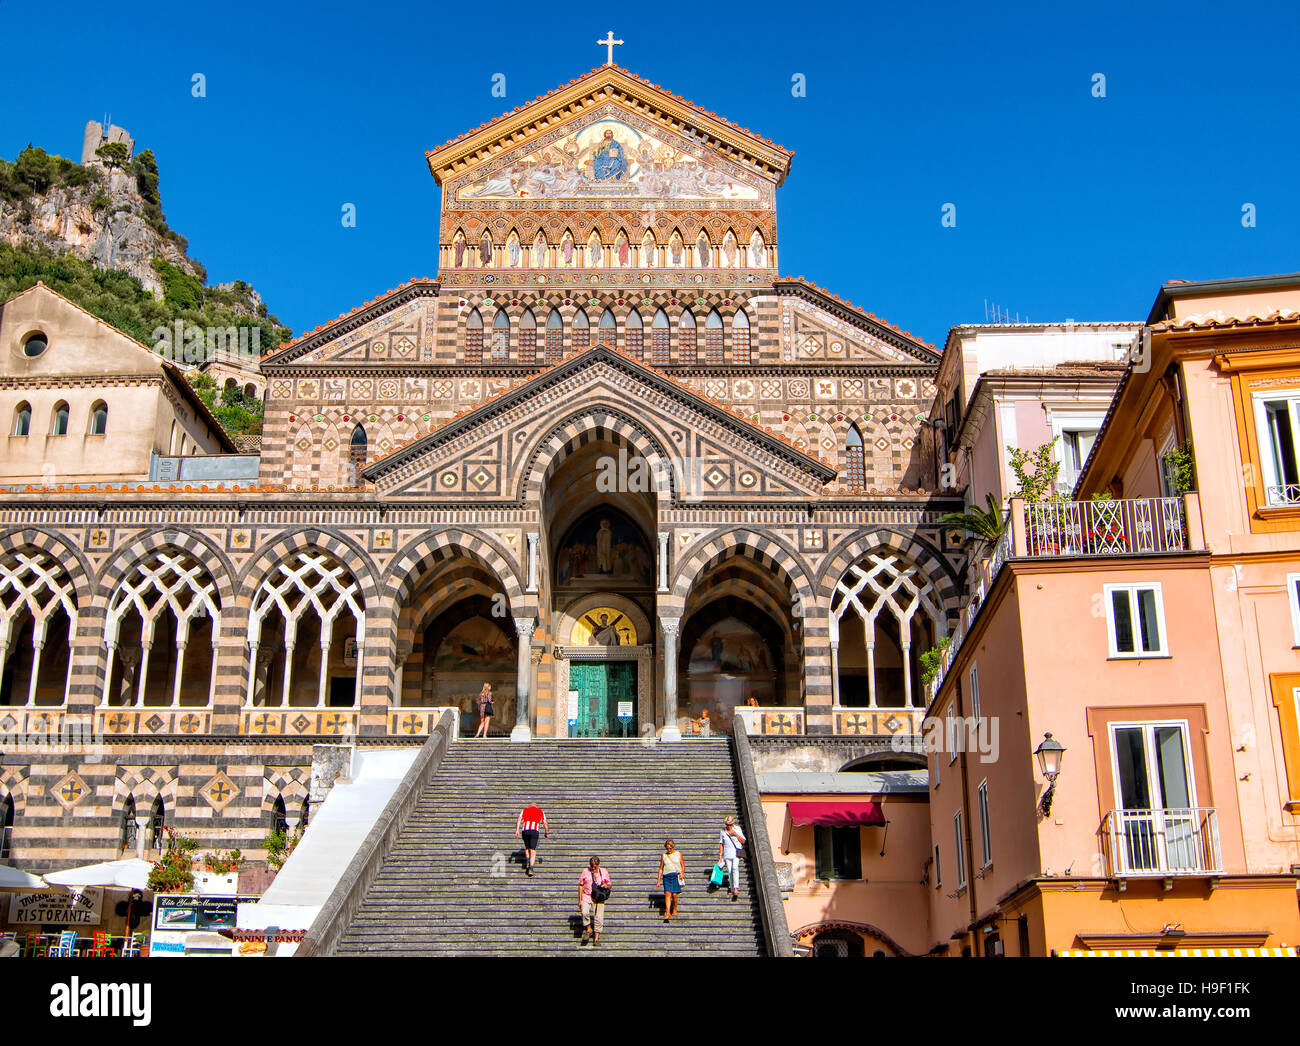 Le Duomo d'Amalfi, Campanie, Italie Banque D'Images